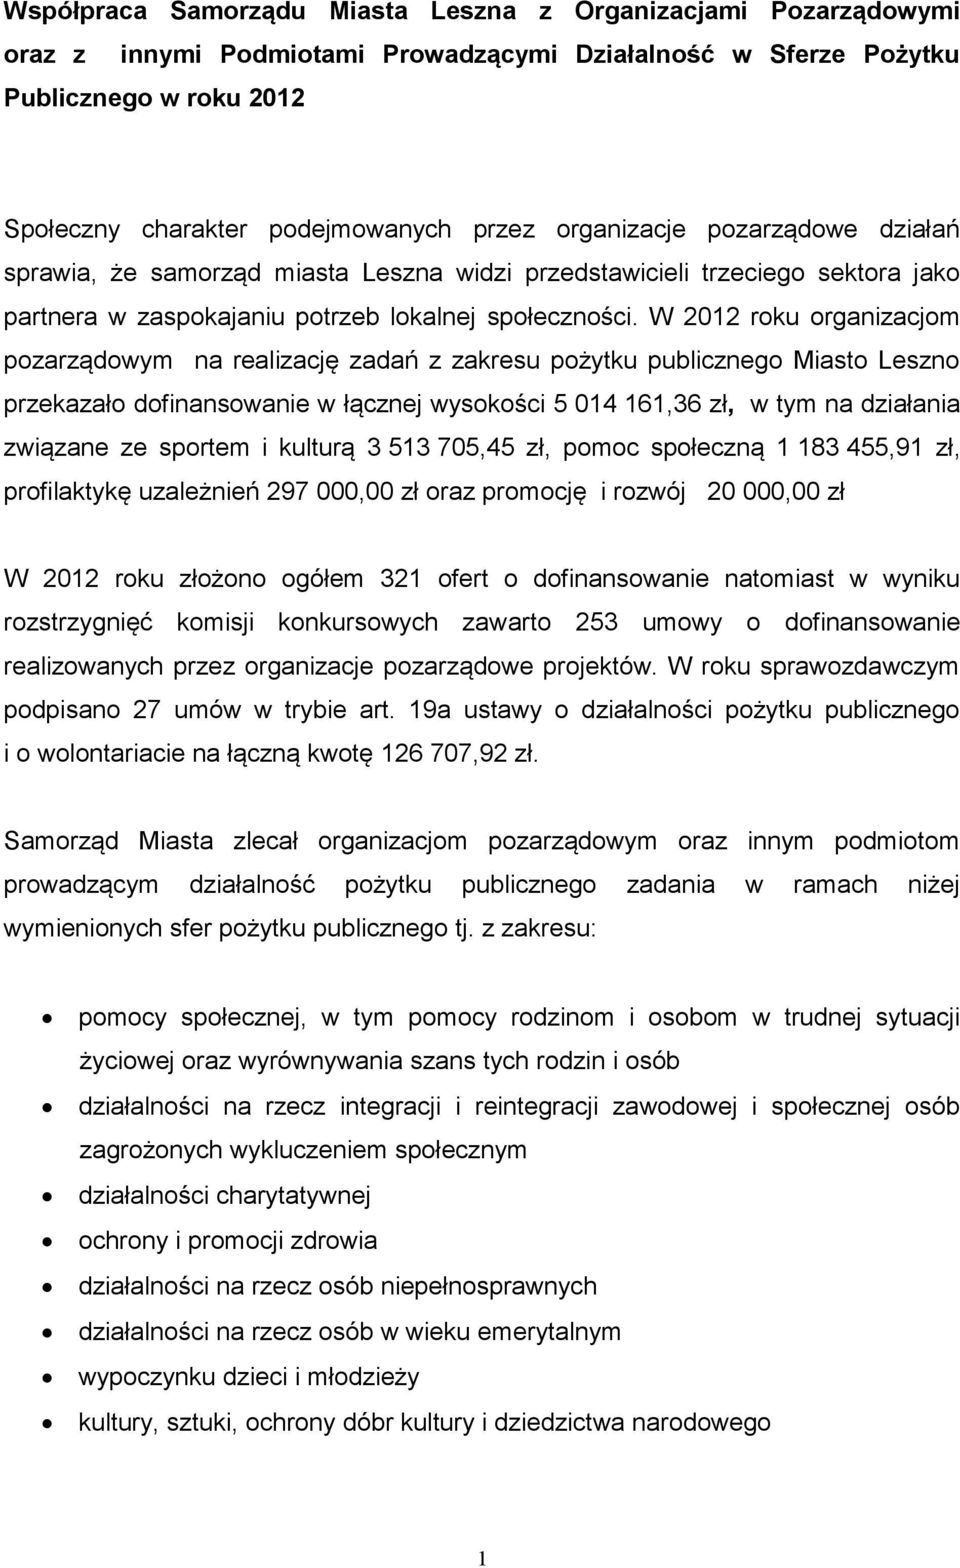 W 2012 roku organizacjom pozarządowym na realizację zadań z zakresu pożytku publicznego Miasto Leszno przekazało dofinansowanie w łącznej wysokości 5 014 161,36 zł, w tym na działania związane ze